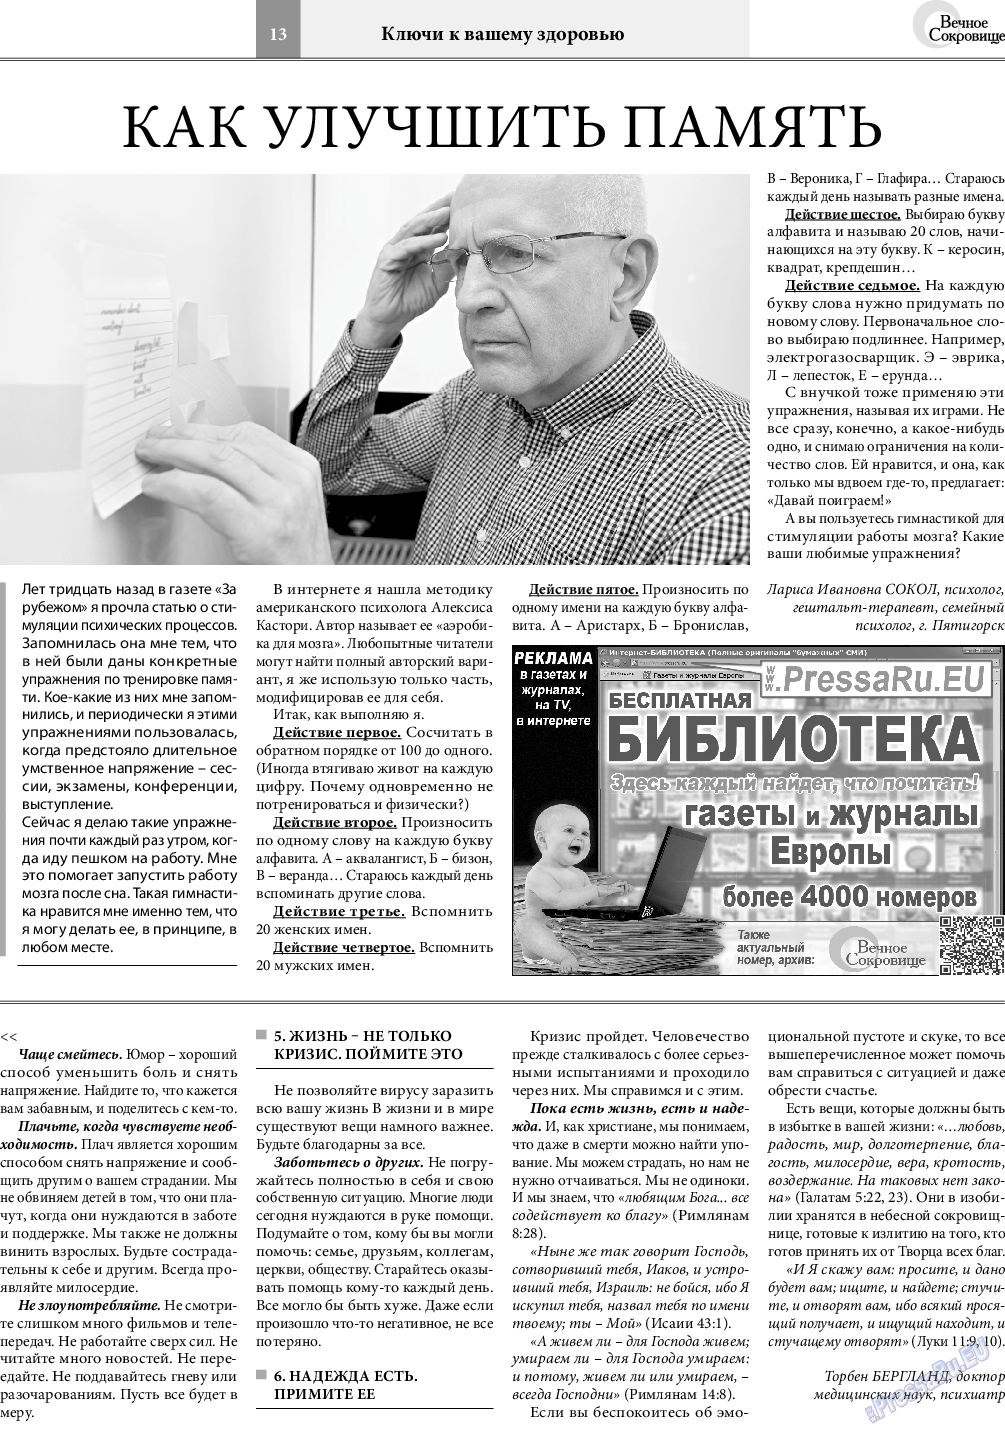 Вечное сокровище (газета). 2021 год, номер 1, стр. 13